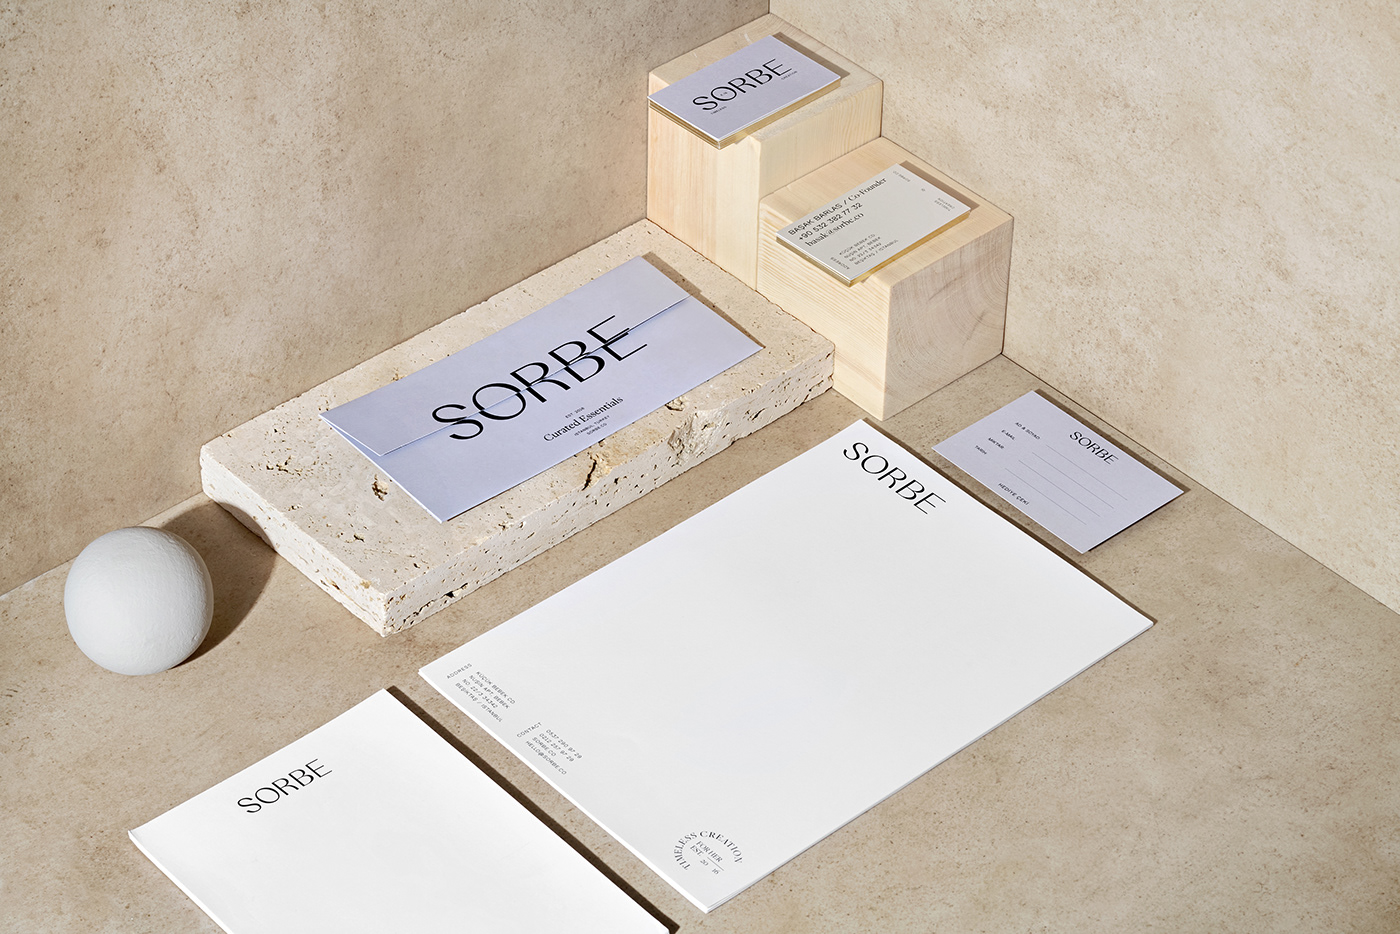 Packaging example #322: SORBE - Branding & Packaging